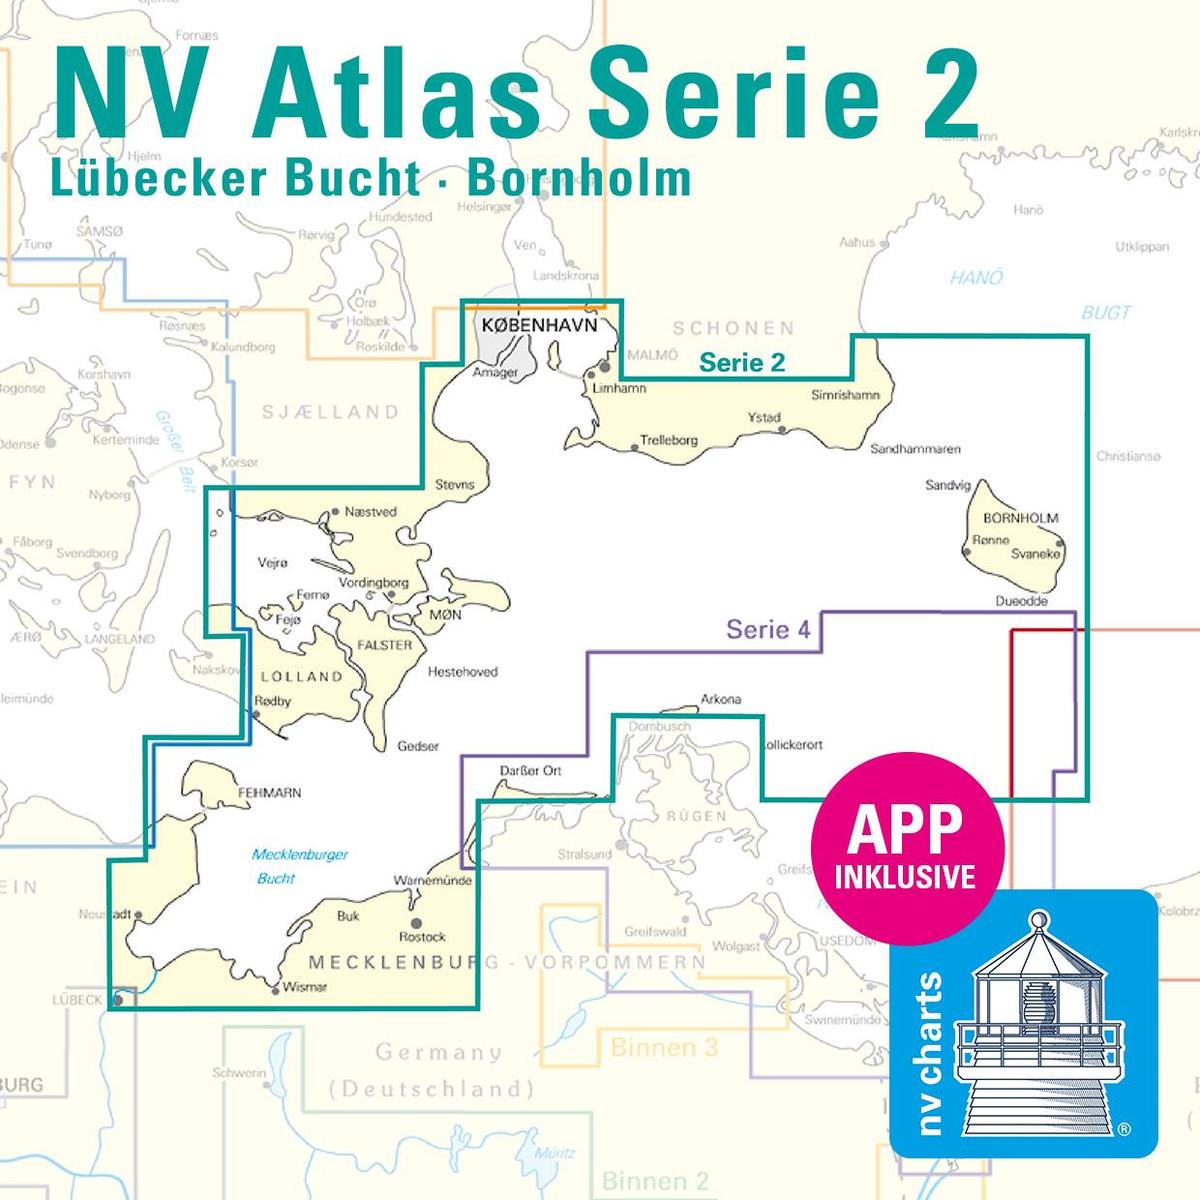 NV Atlas Serie 2 Lübecker Bucht - Bornholm - Kopenhagen